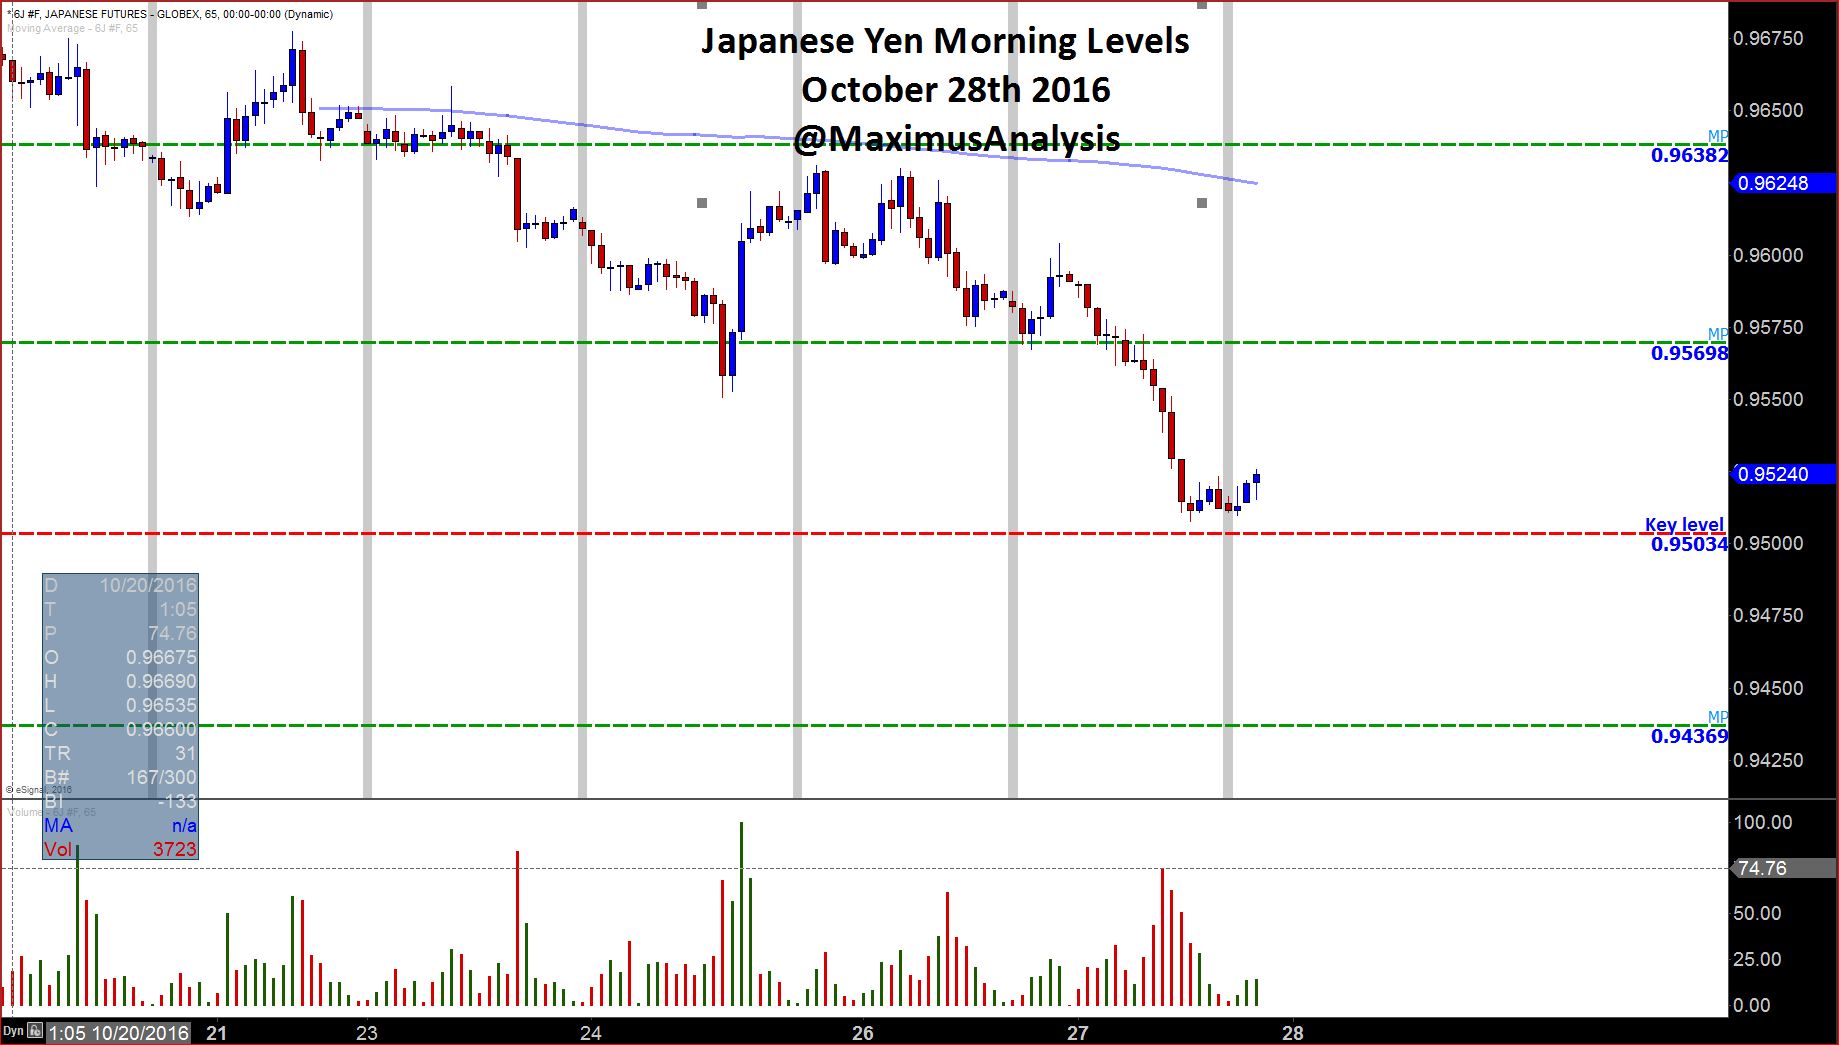 Japanese Yen Morning Levels.JPG